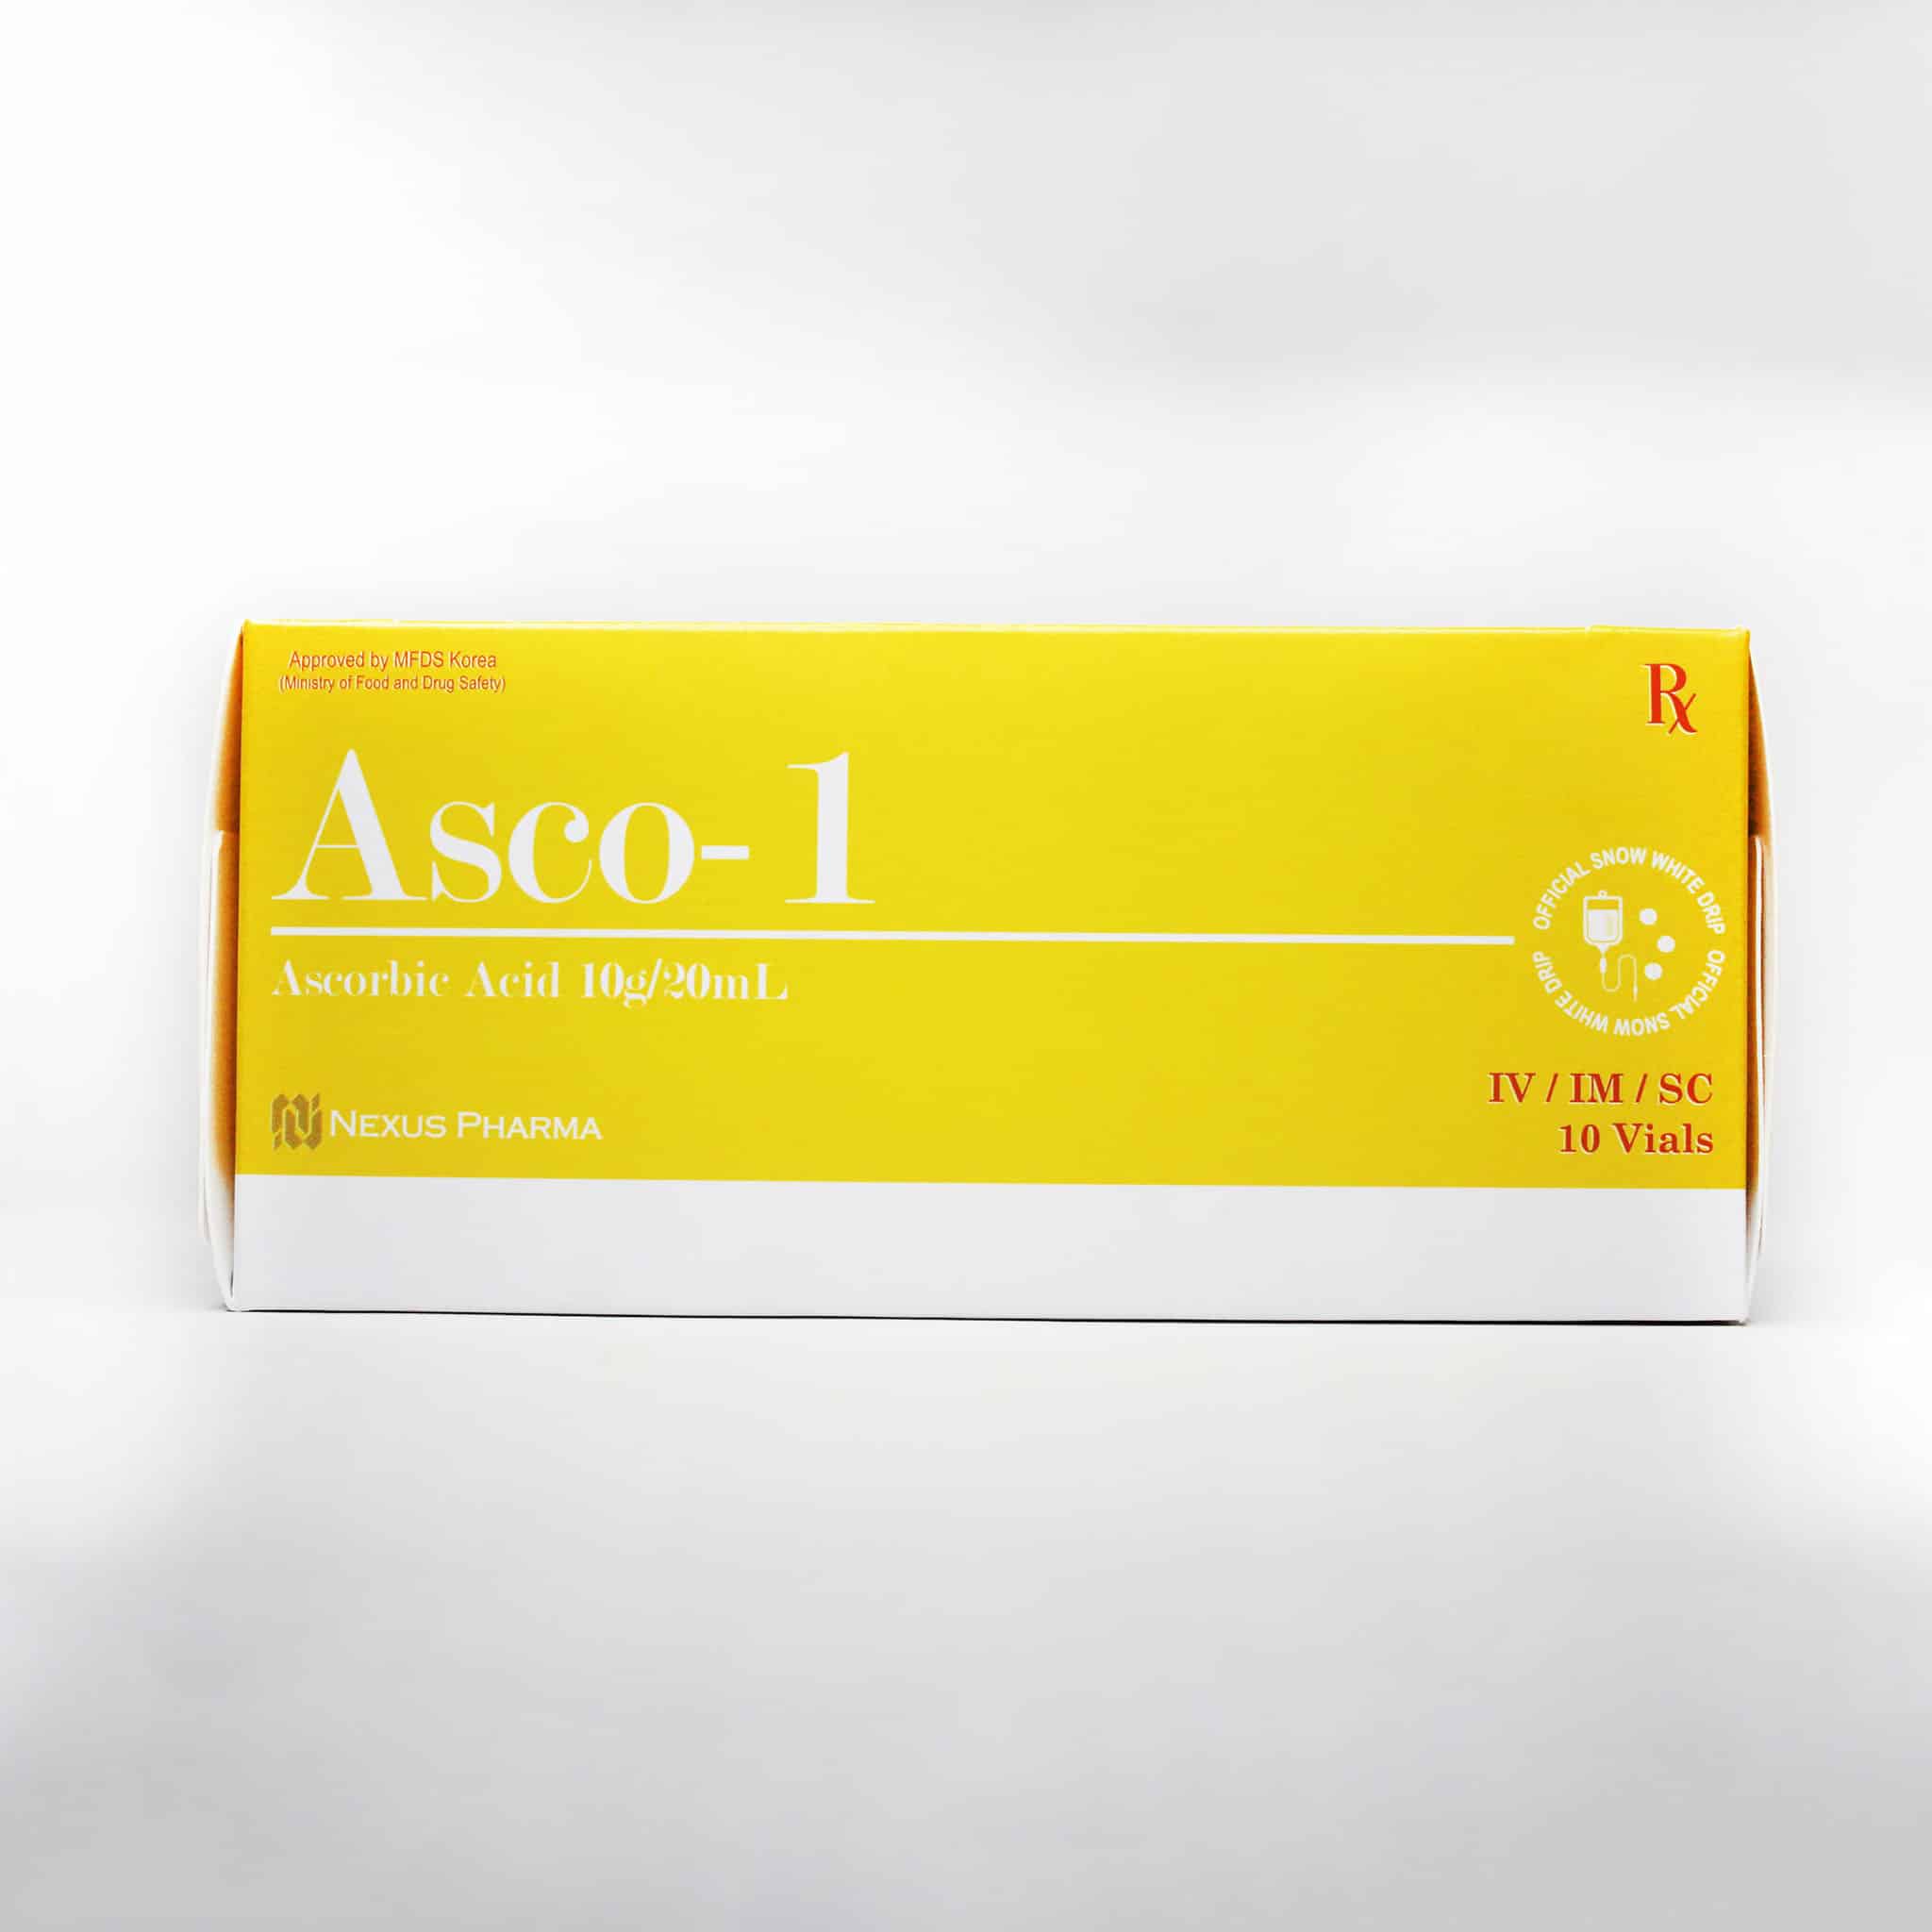 Asco-1 ascorbic acid iNJECTABLE